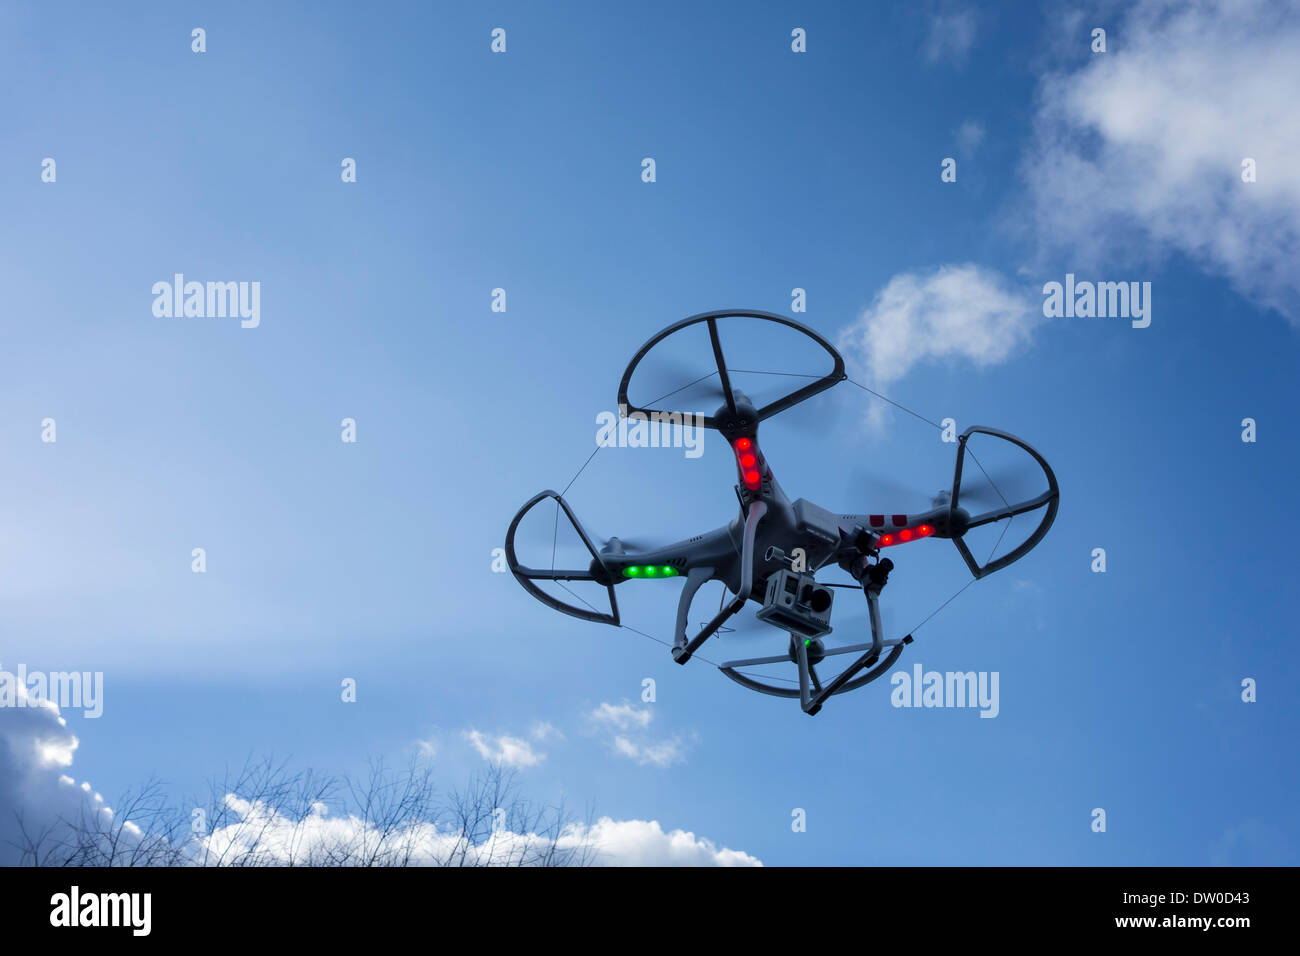 Miniatur-Drohne / unmanned aerial vehicles / UAV ausgestattet mit Kamera im Flug gegen blauen Himmel mit Wolken Stockfoto